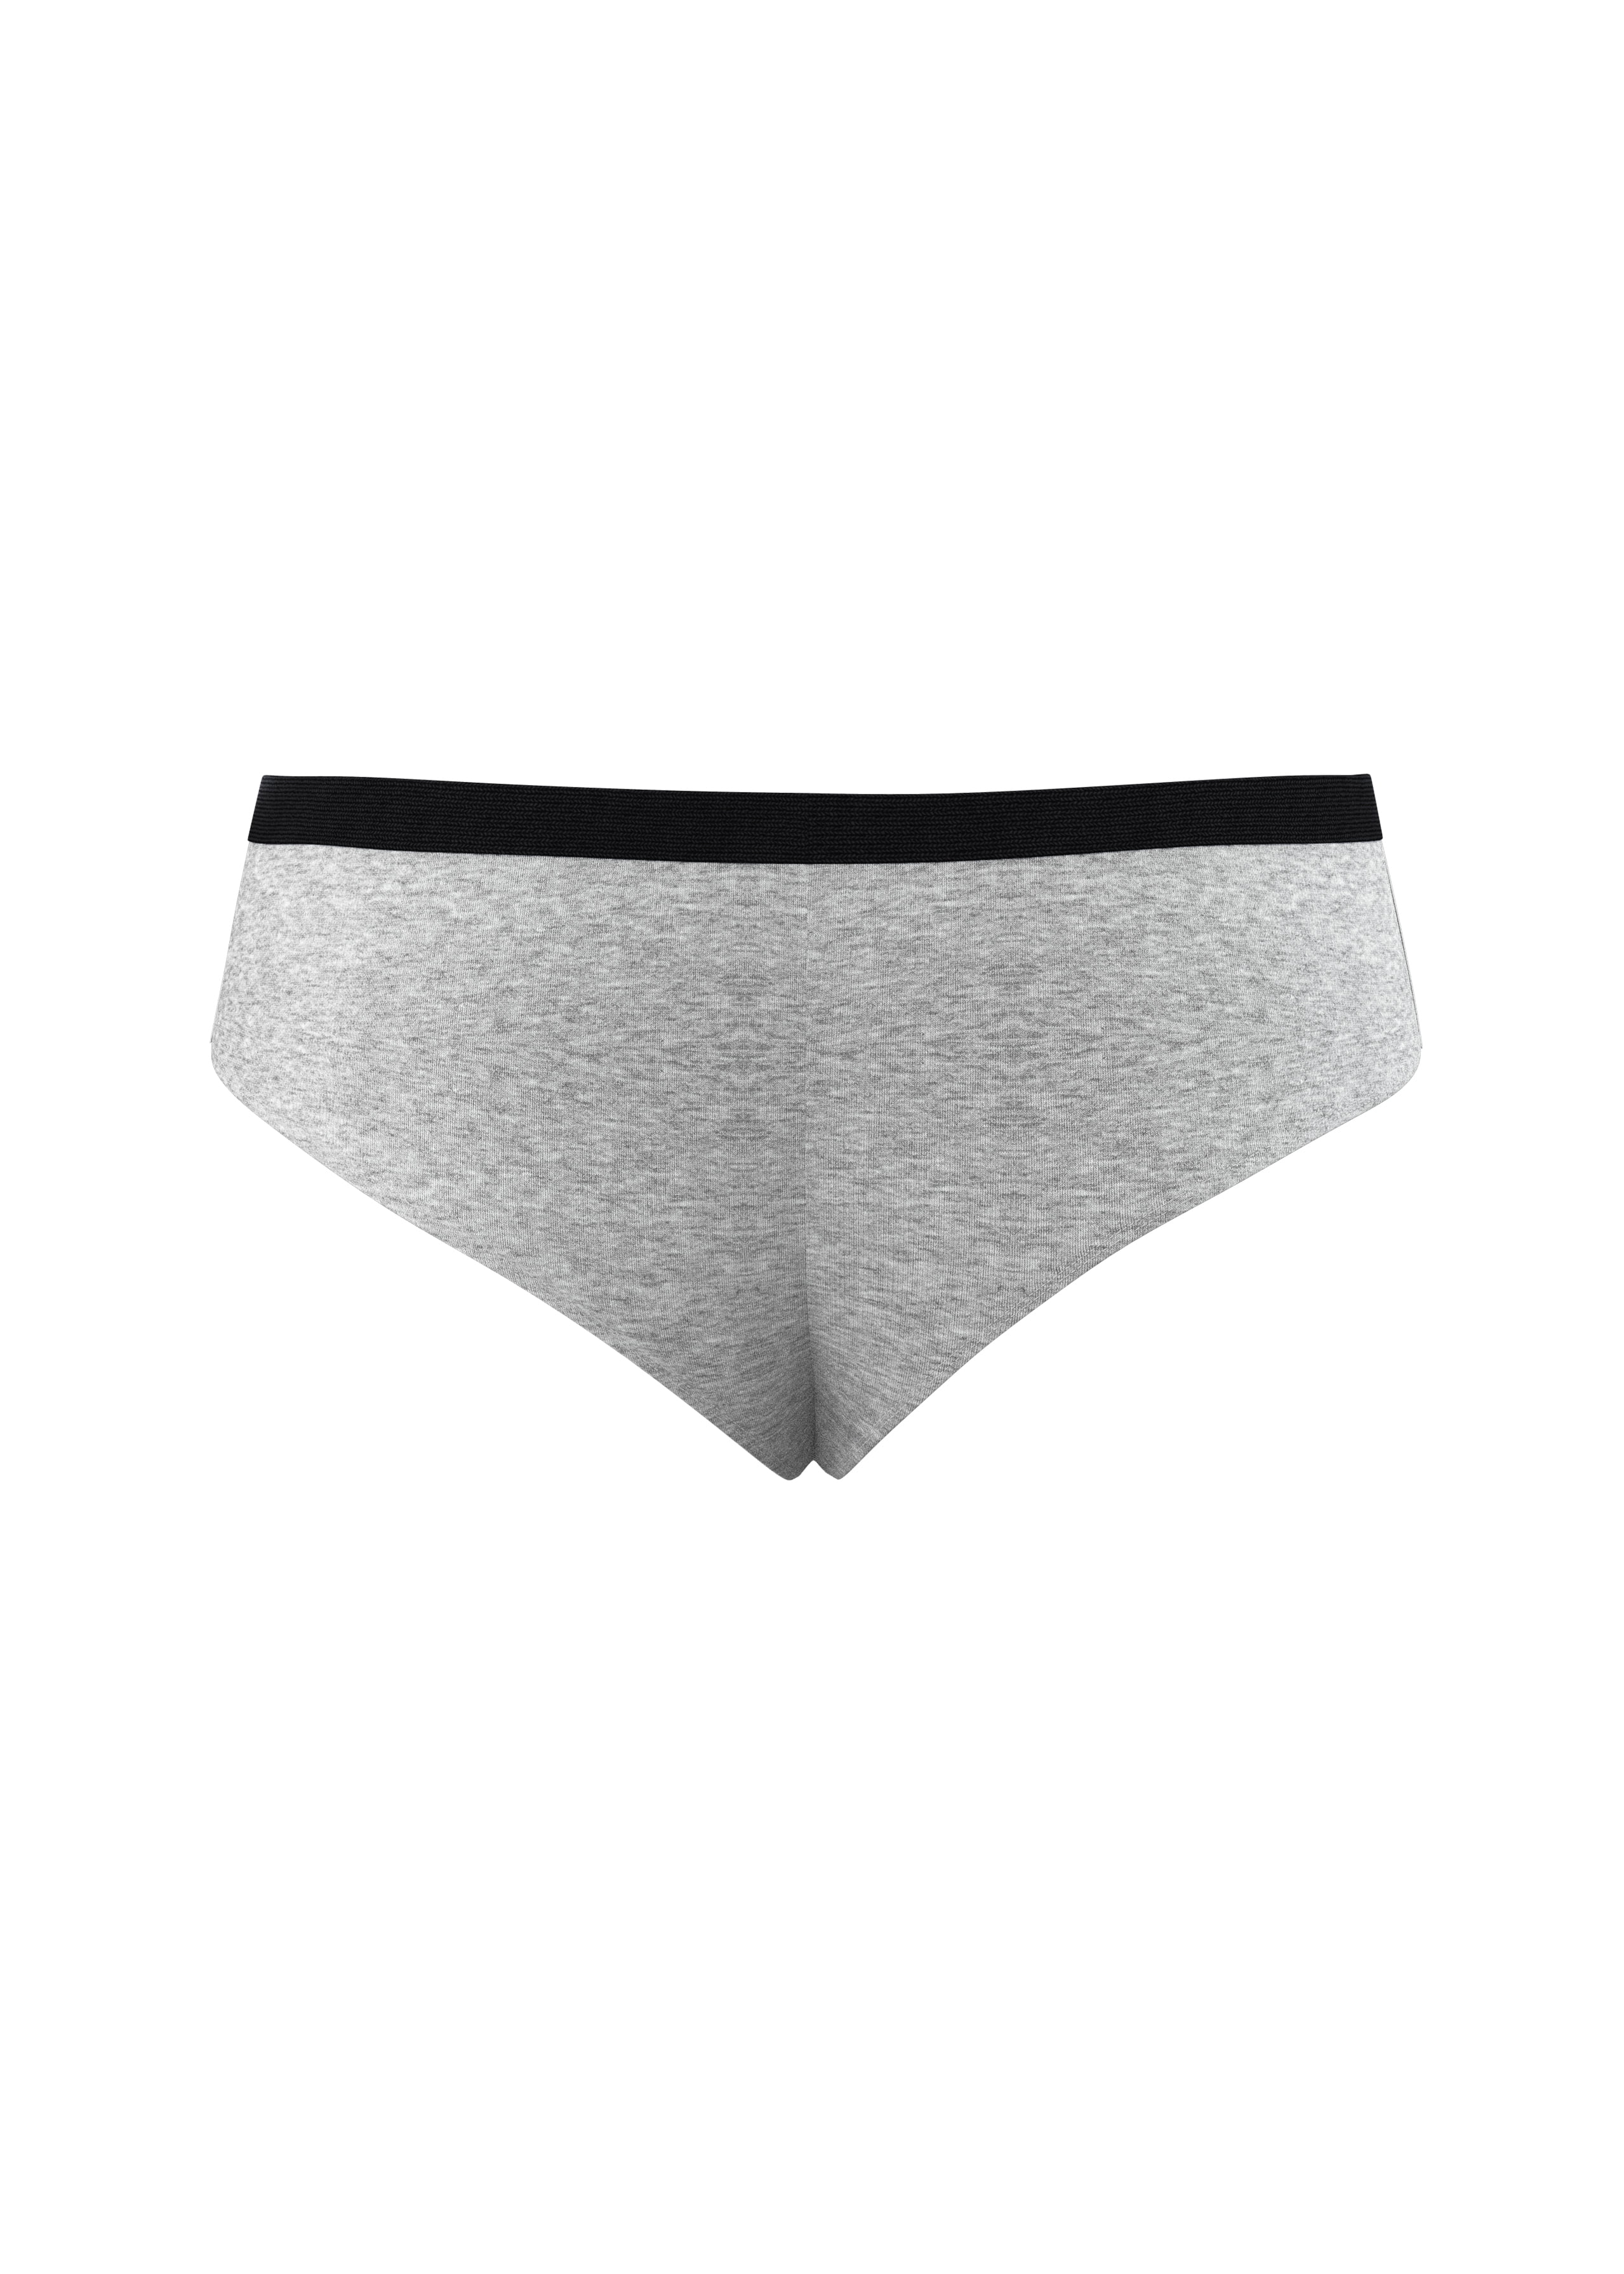 The Intramural Champ | Heather Grey Modal Boyshort Underwear